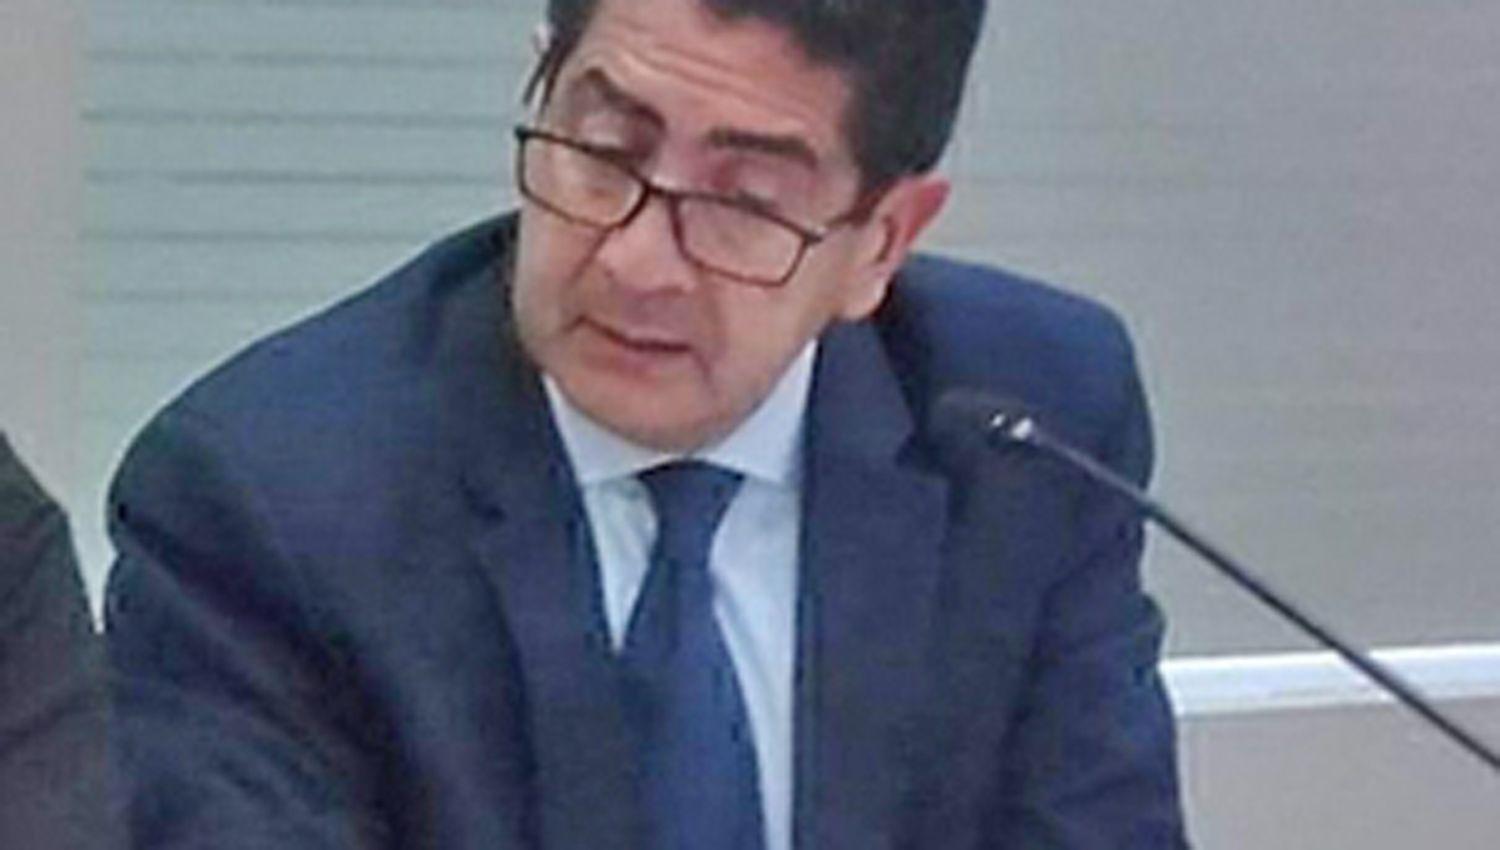 El Dr Pedro Ib�ñez
tomó intervención en el caso